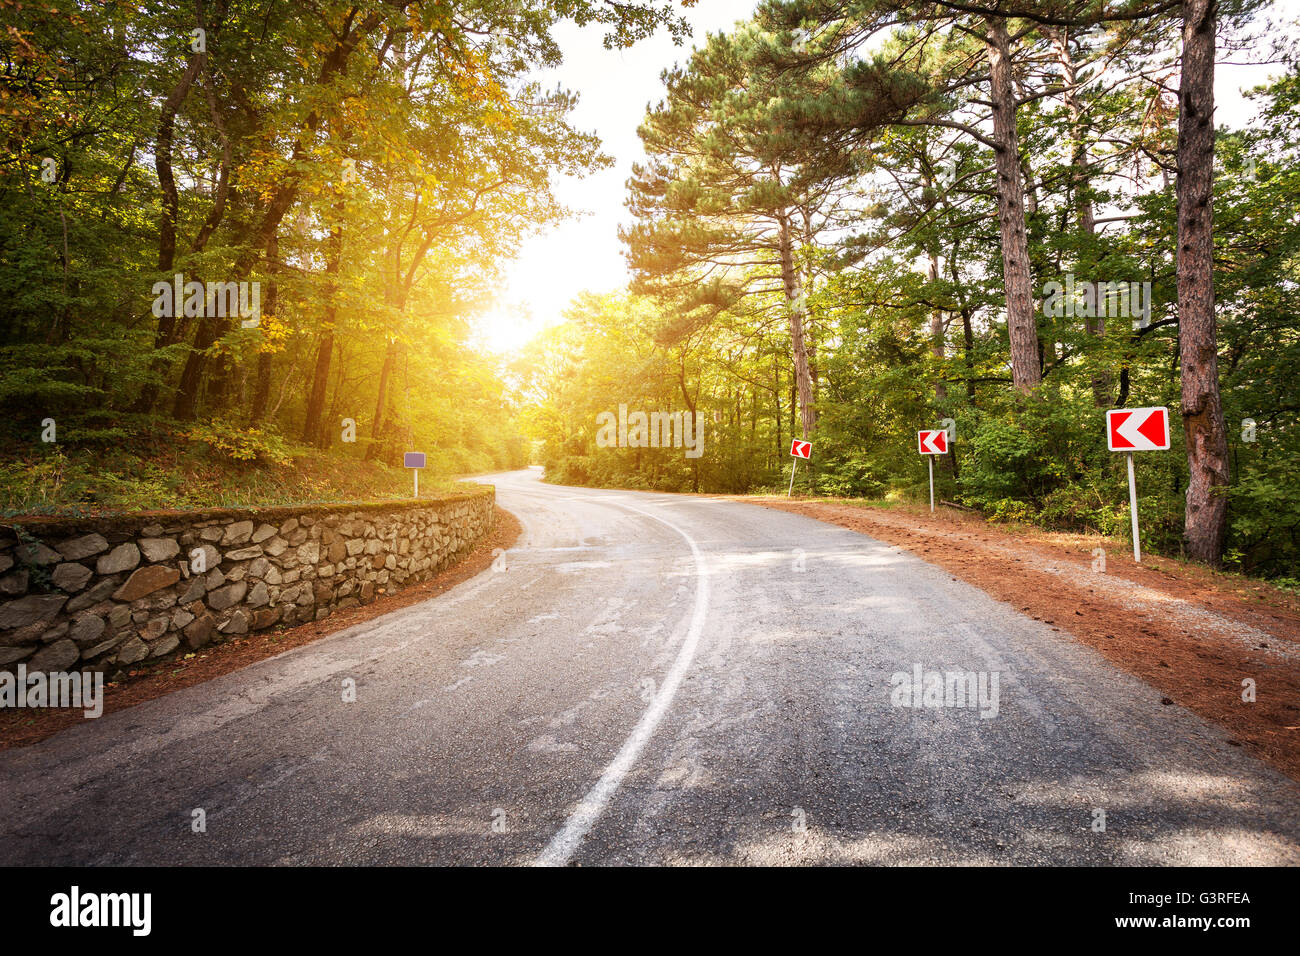 Schöne Landschaft mit Asphalt, grünen Wald und Straße Straßenschild bei farbenfrohen Sonnenaufgang im Sommer. Krimberge. Reisen Hinterg Stockfoto